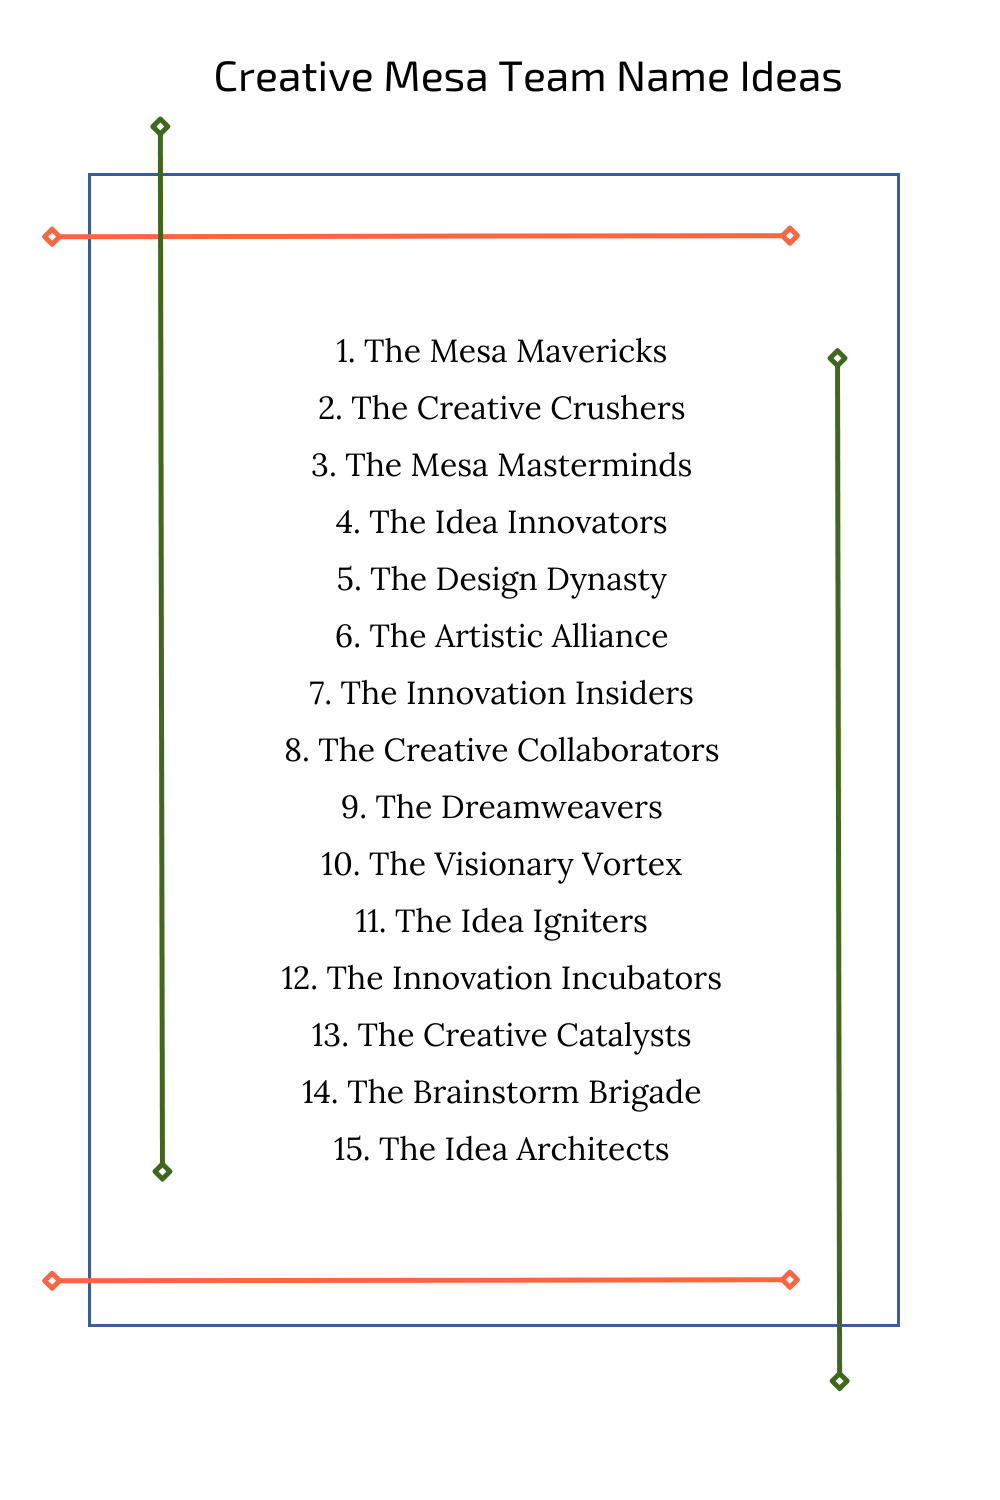 Creative Mesa Team Name Ideas